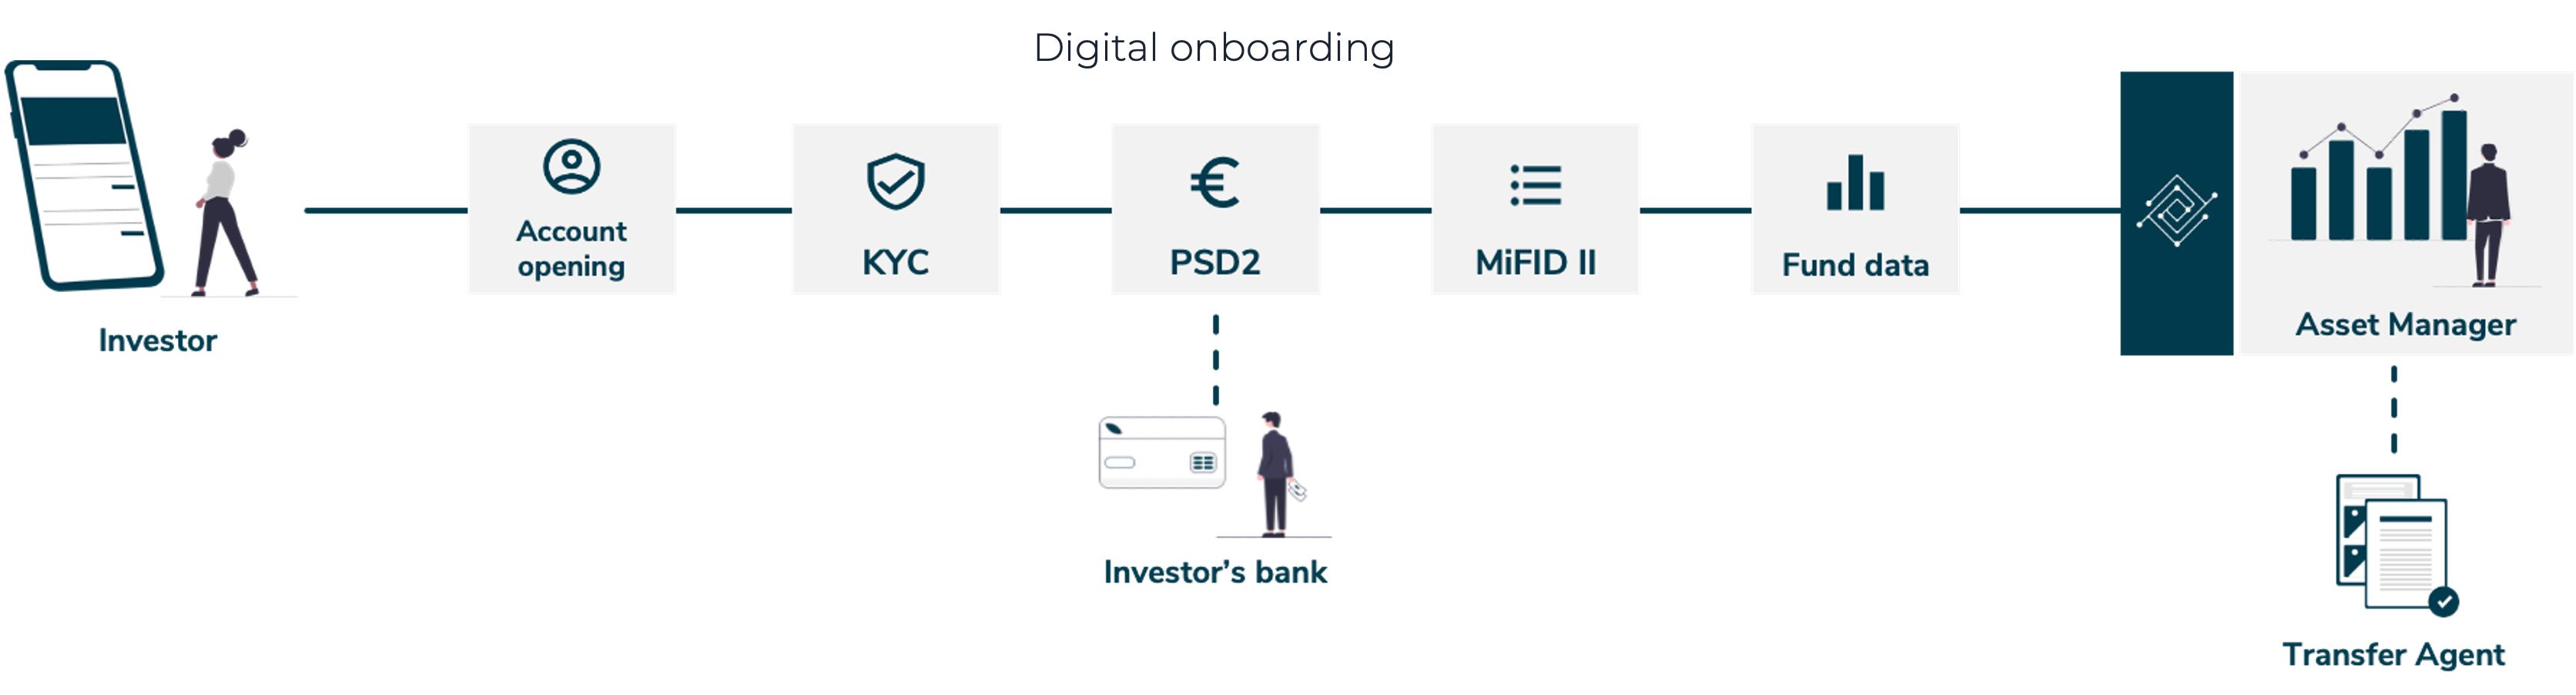 Digital onboarding with FundsDLT